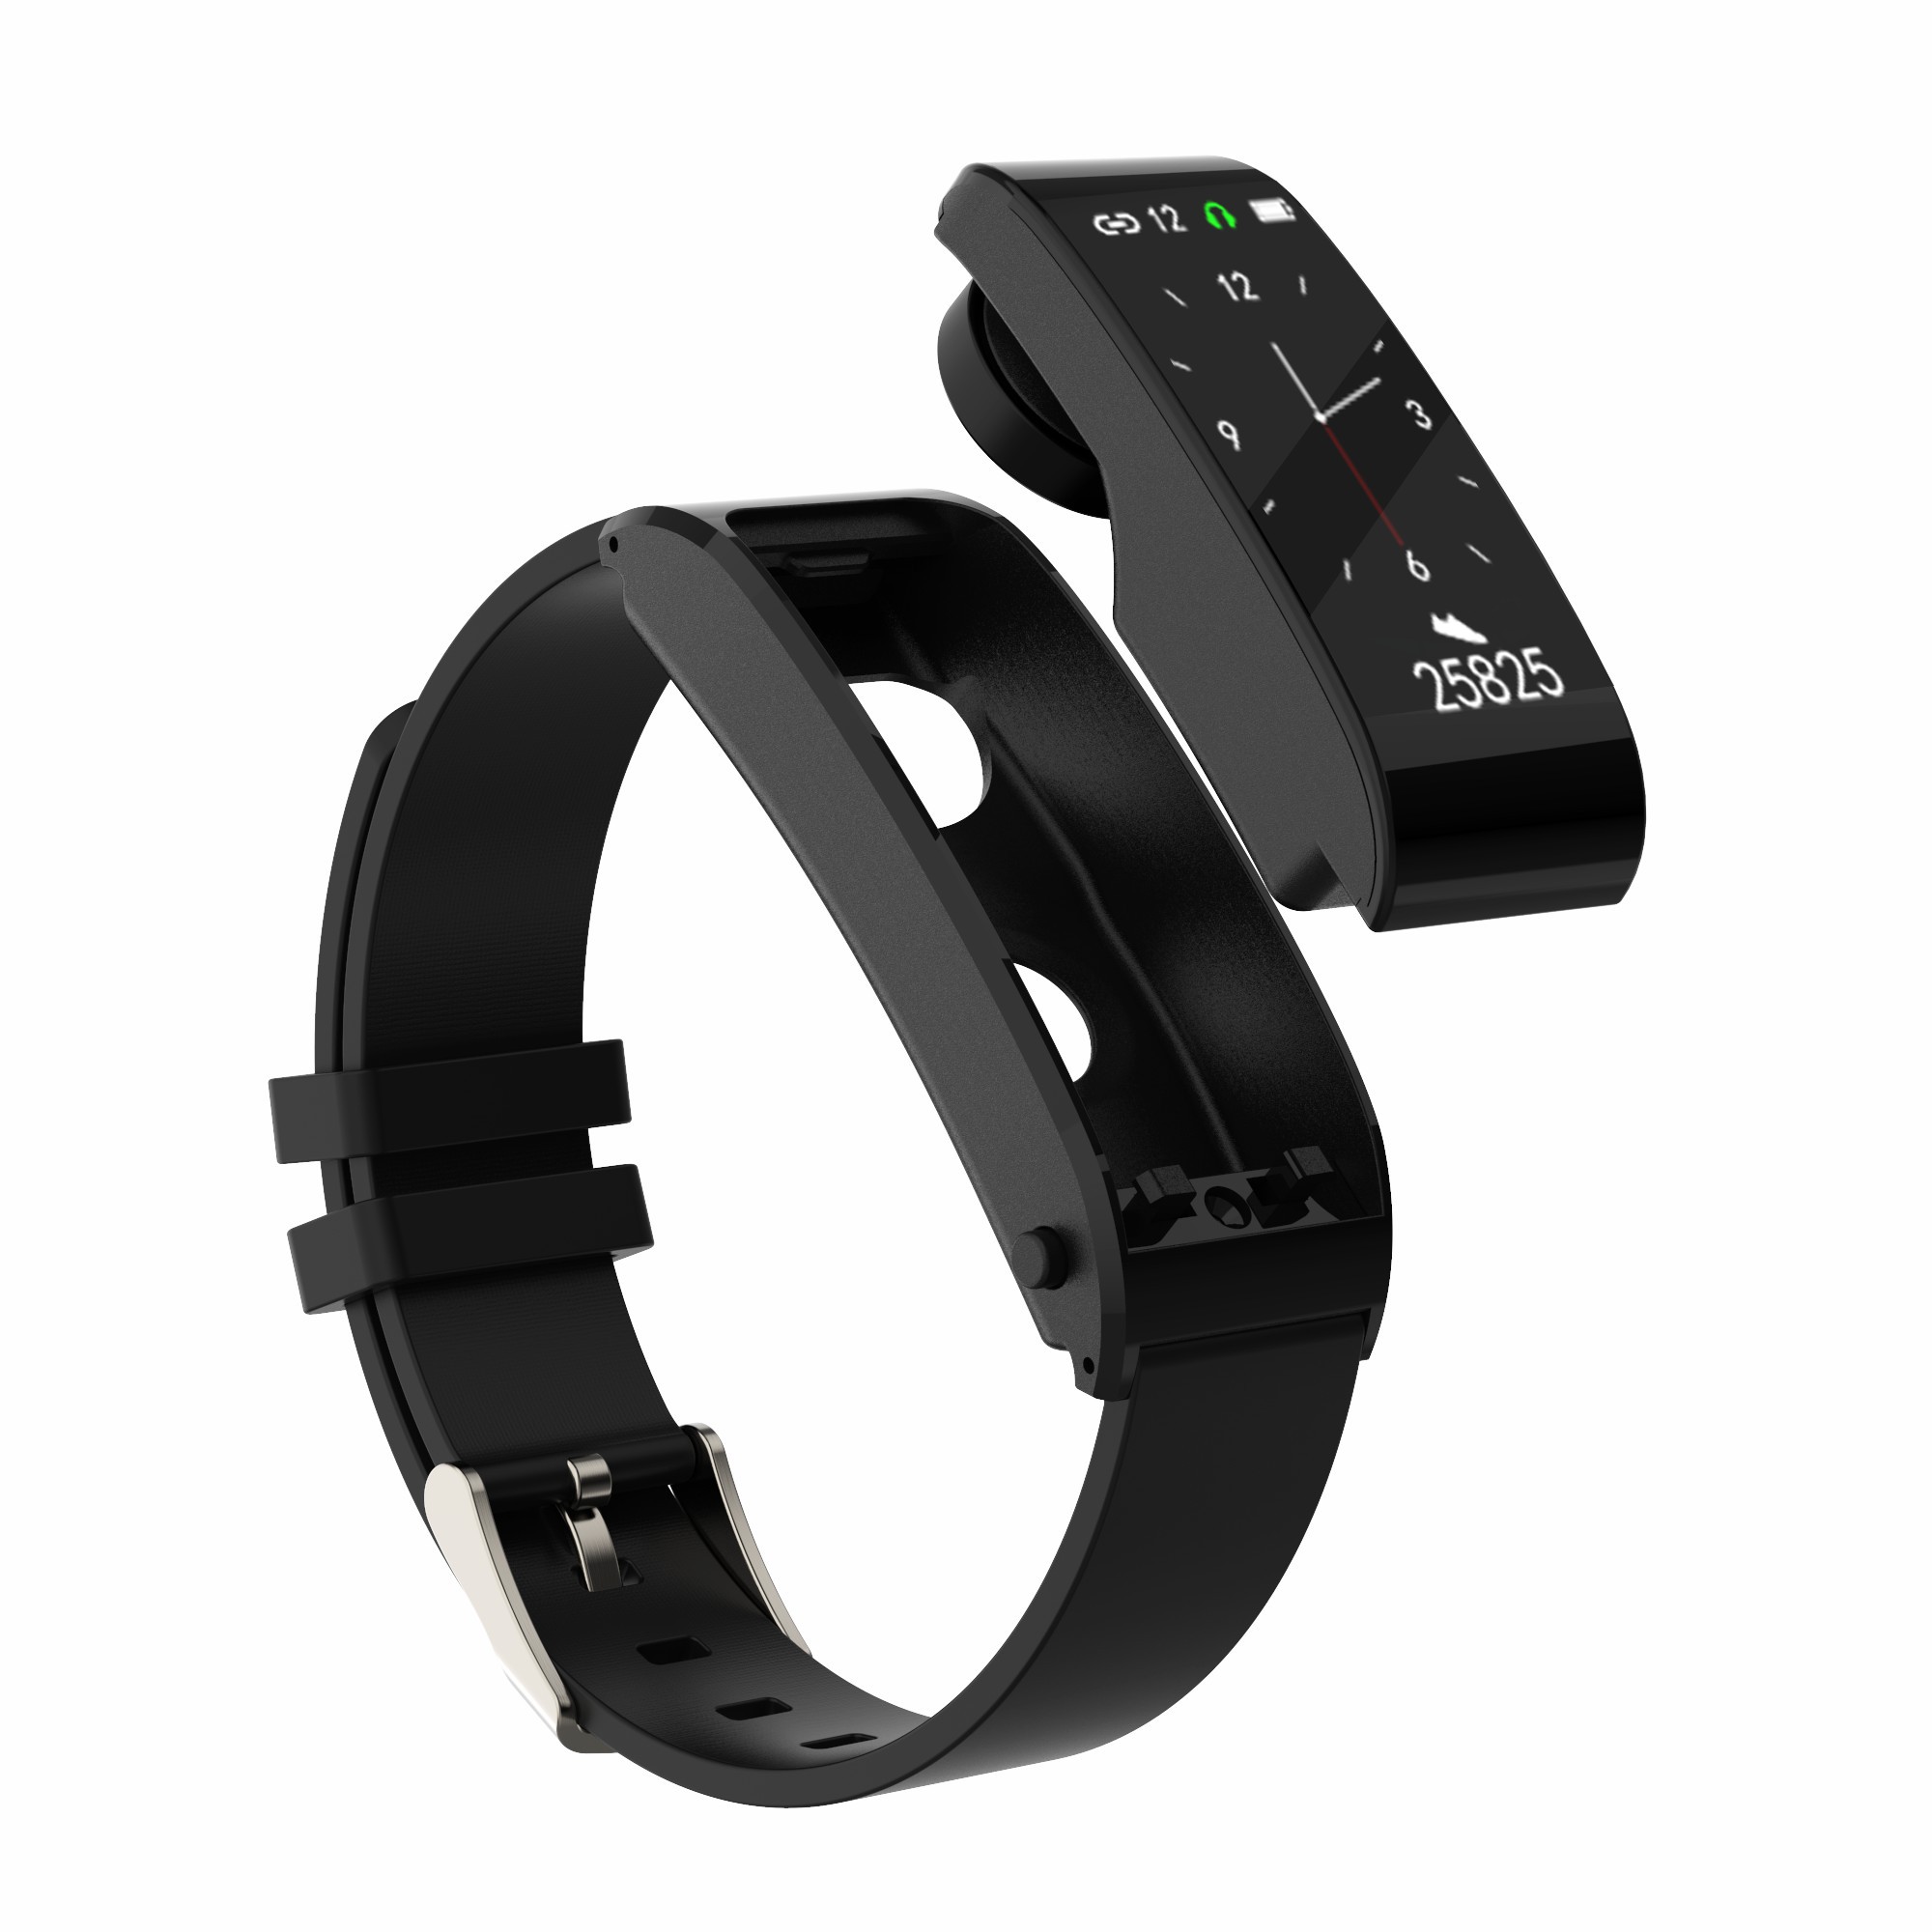 智能手环蓝牙耳机二合一可接打通话监测心率血压睡眠提醒运动计步防水男女B56多功能安卓手表